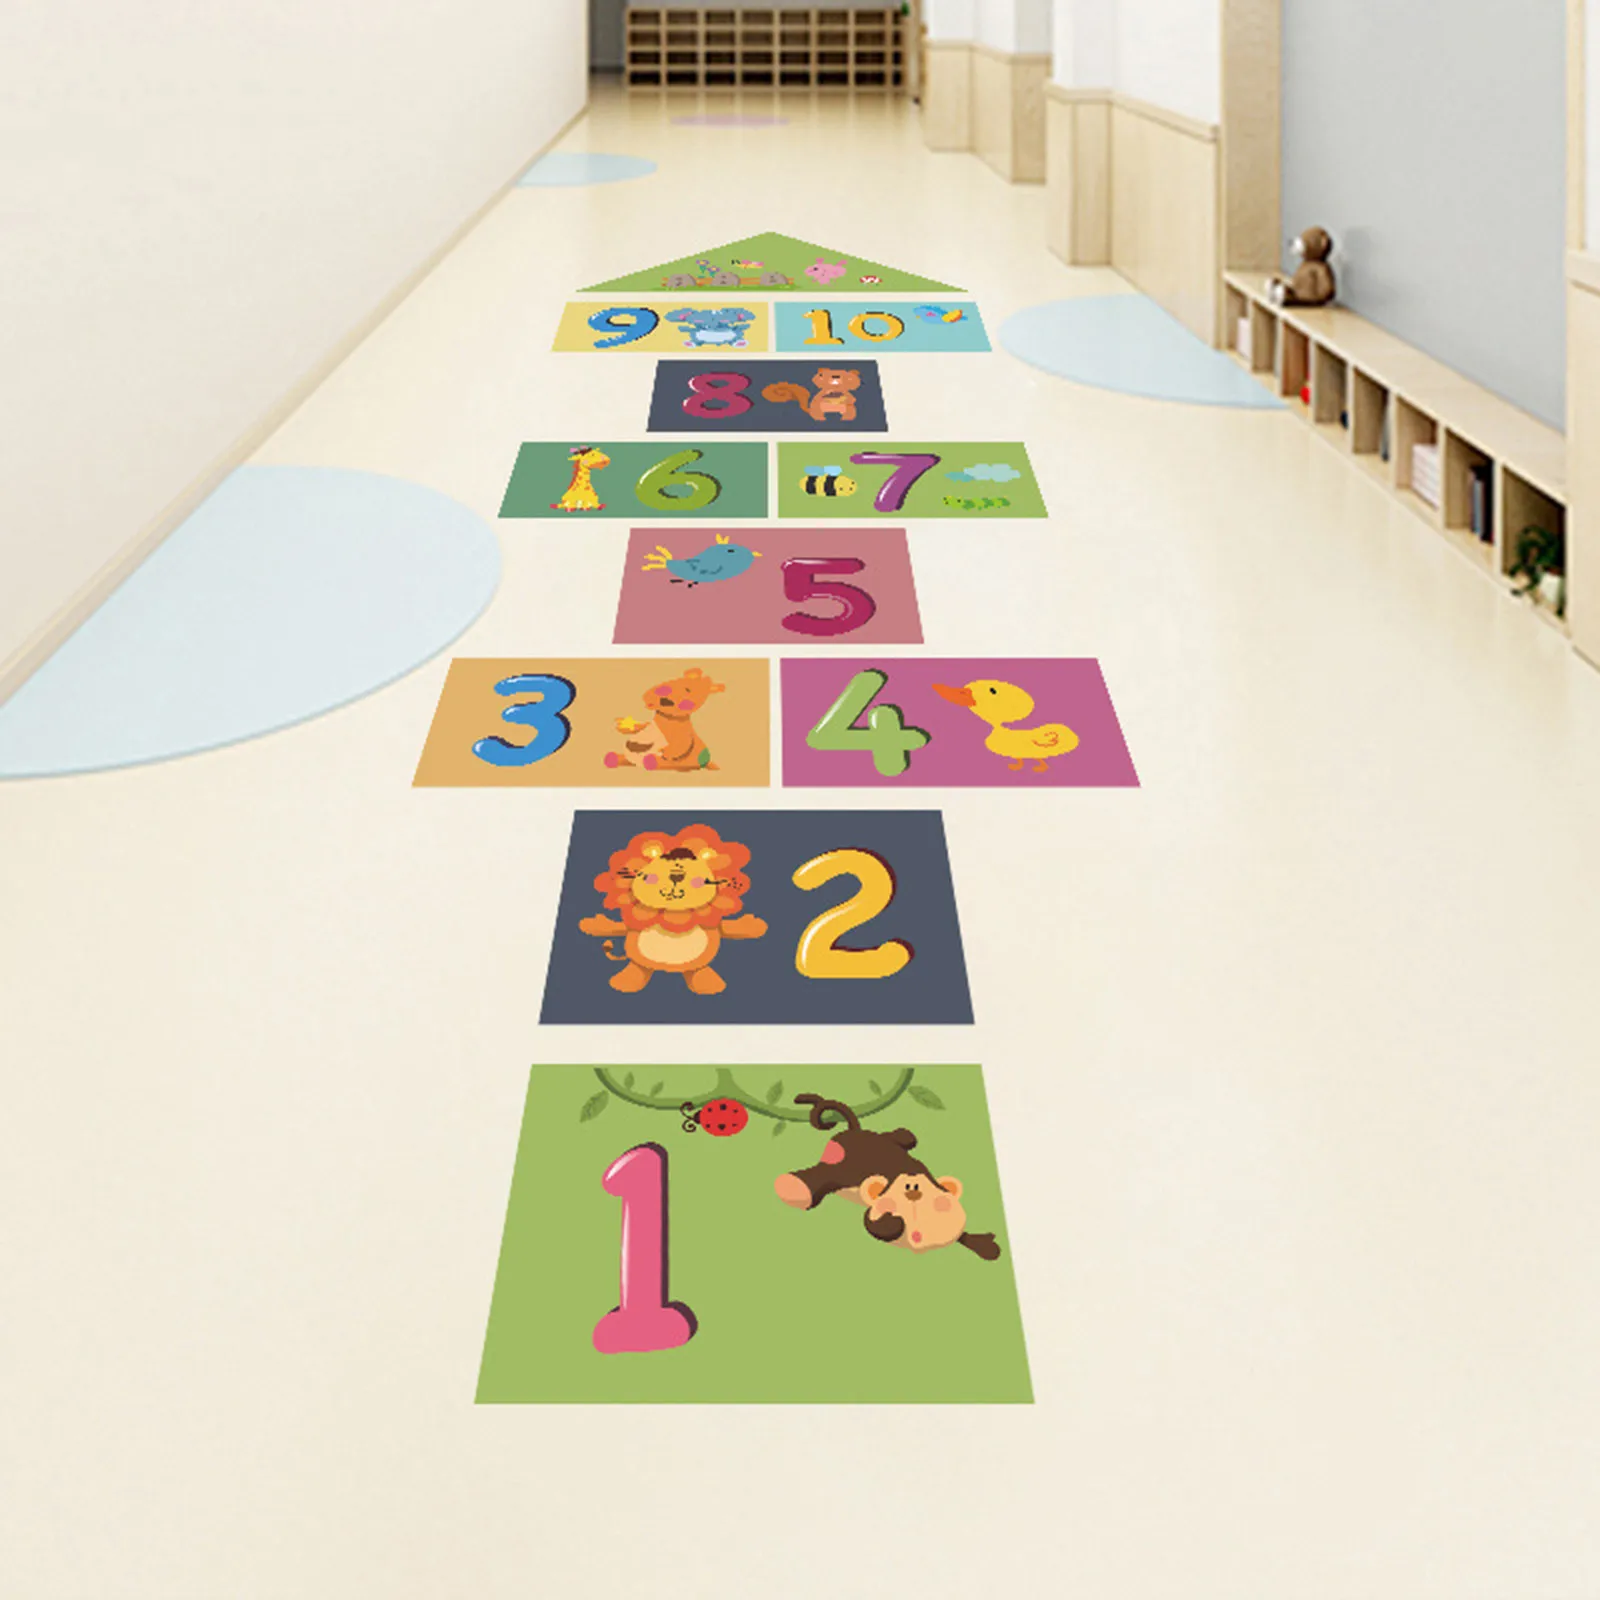 Source design custom made stickers house game kindergarten floor ...